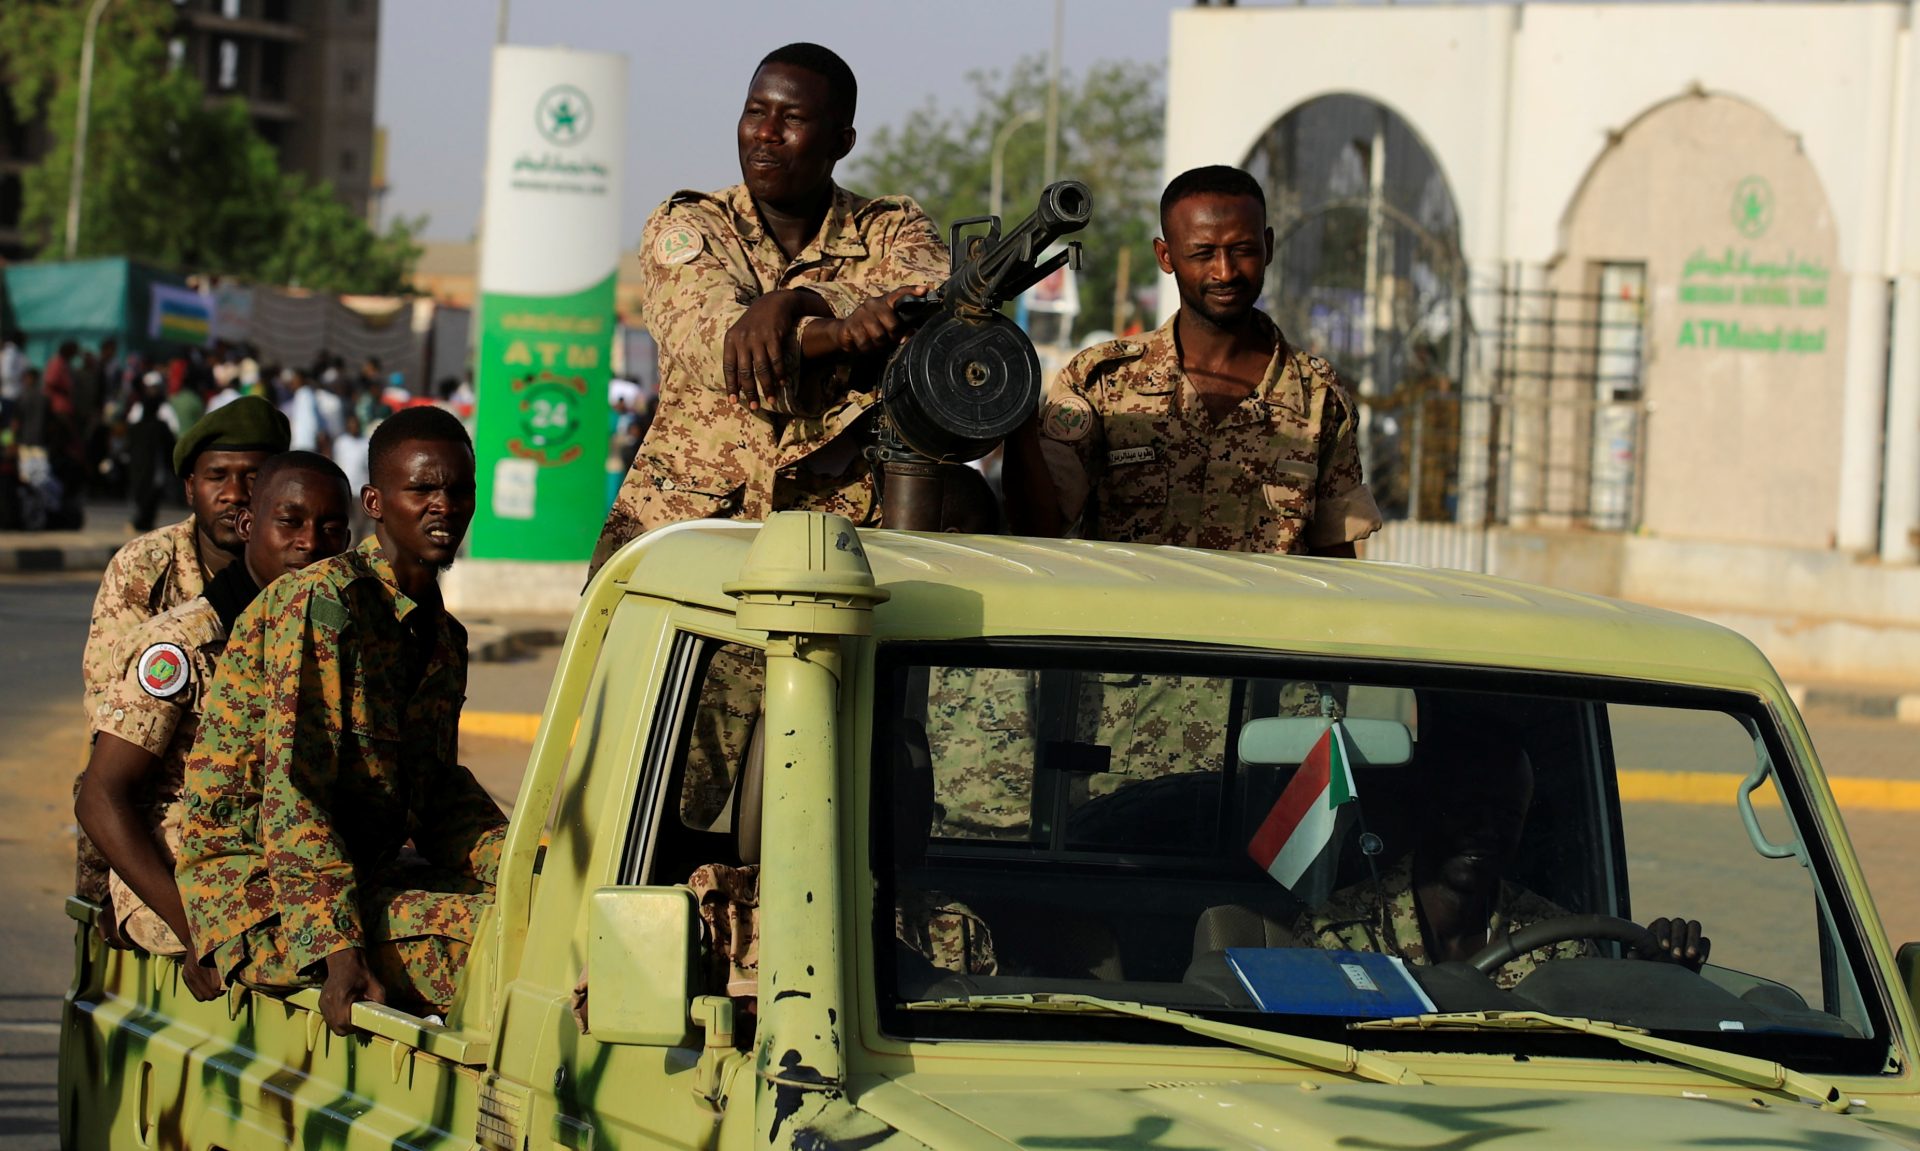 État d'urgence à Khartoum, raisons de sécurité ou militaires